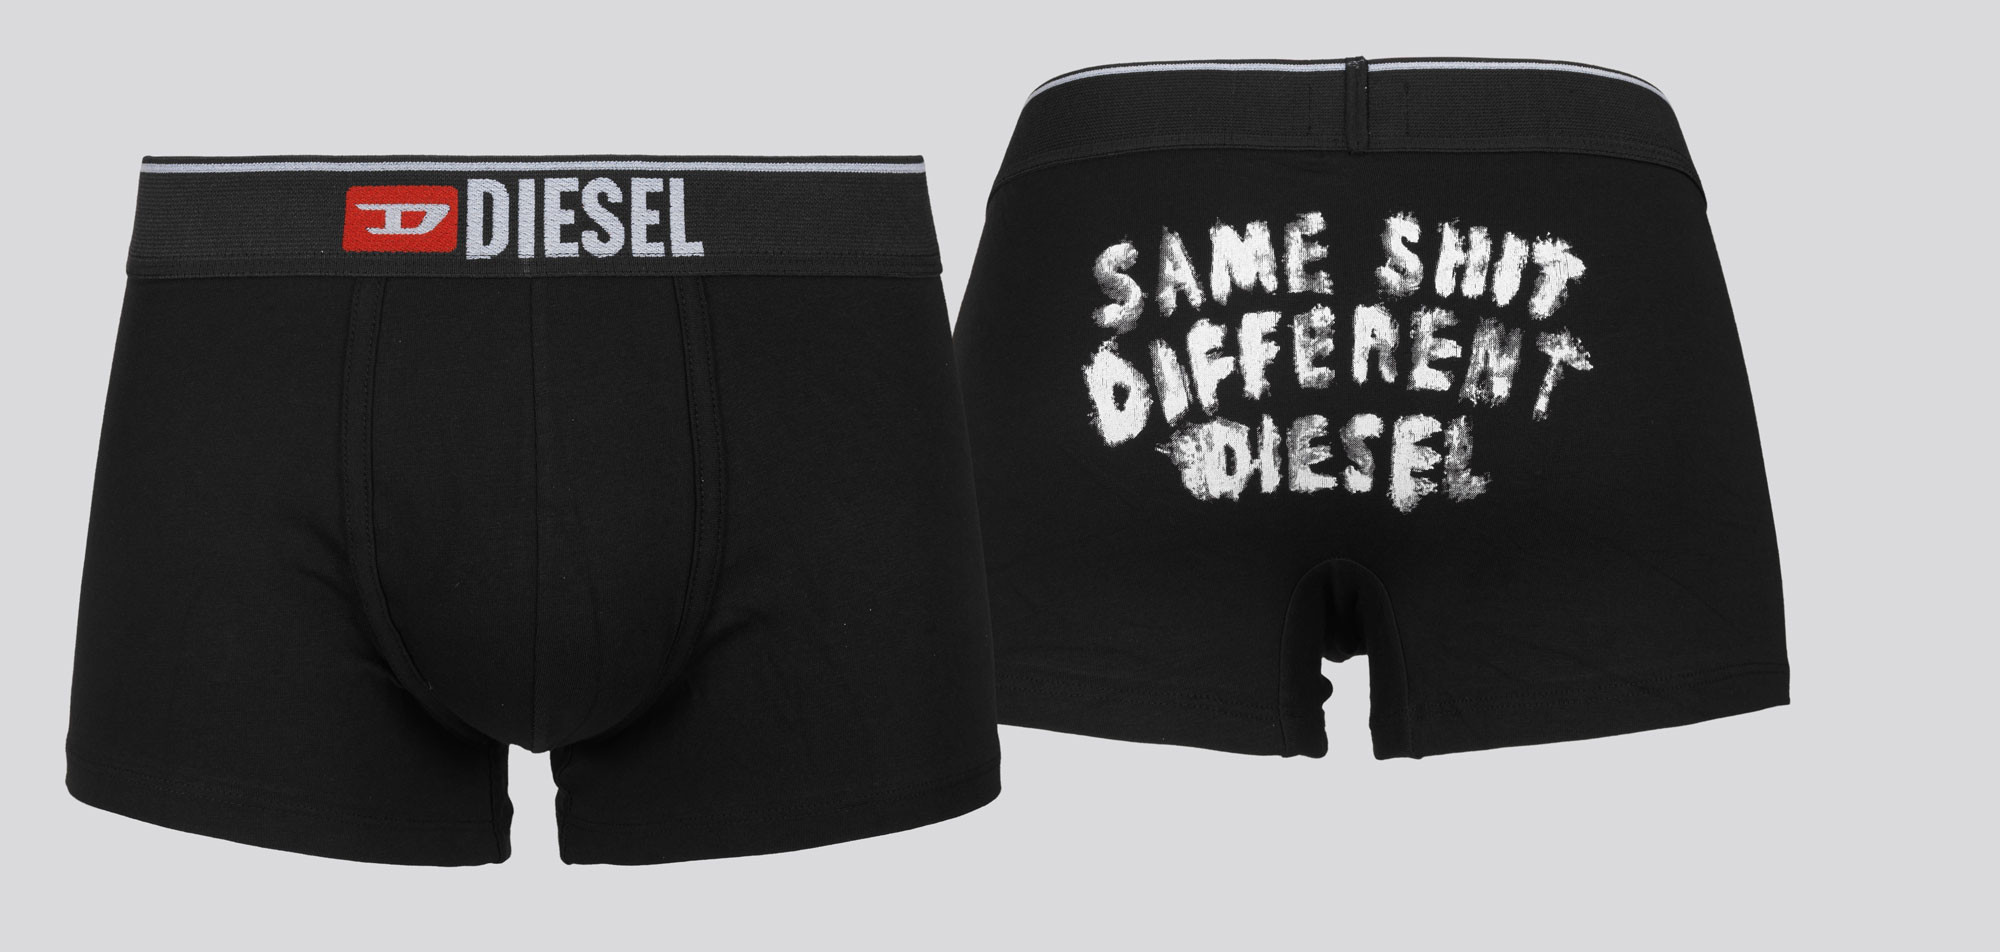 Diesel Boxershort Damien SGAE, color Nee